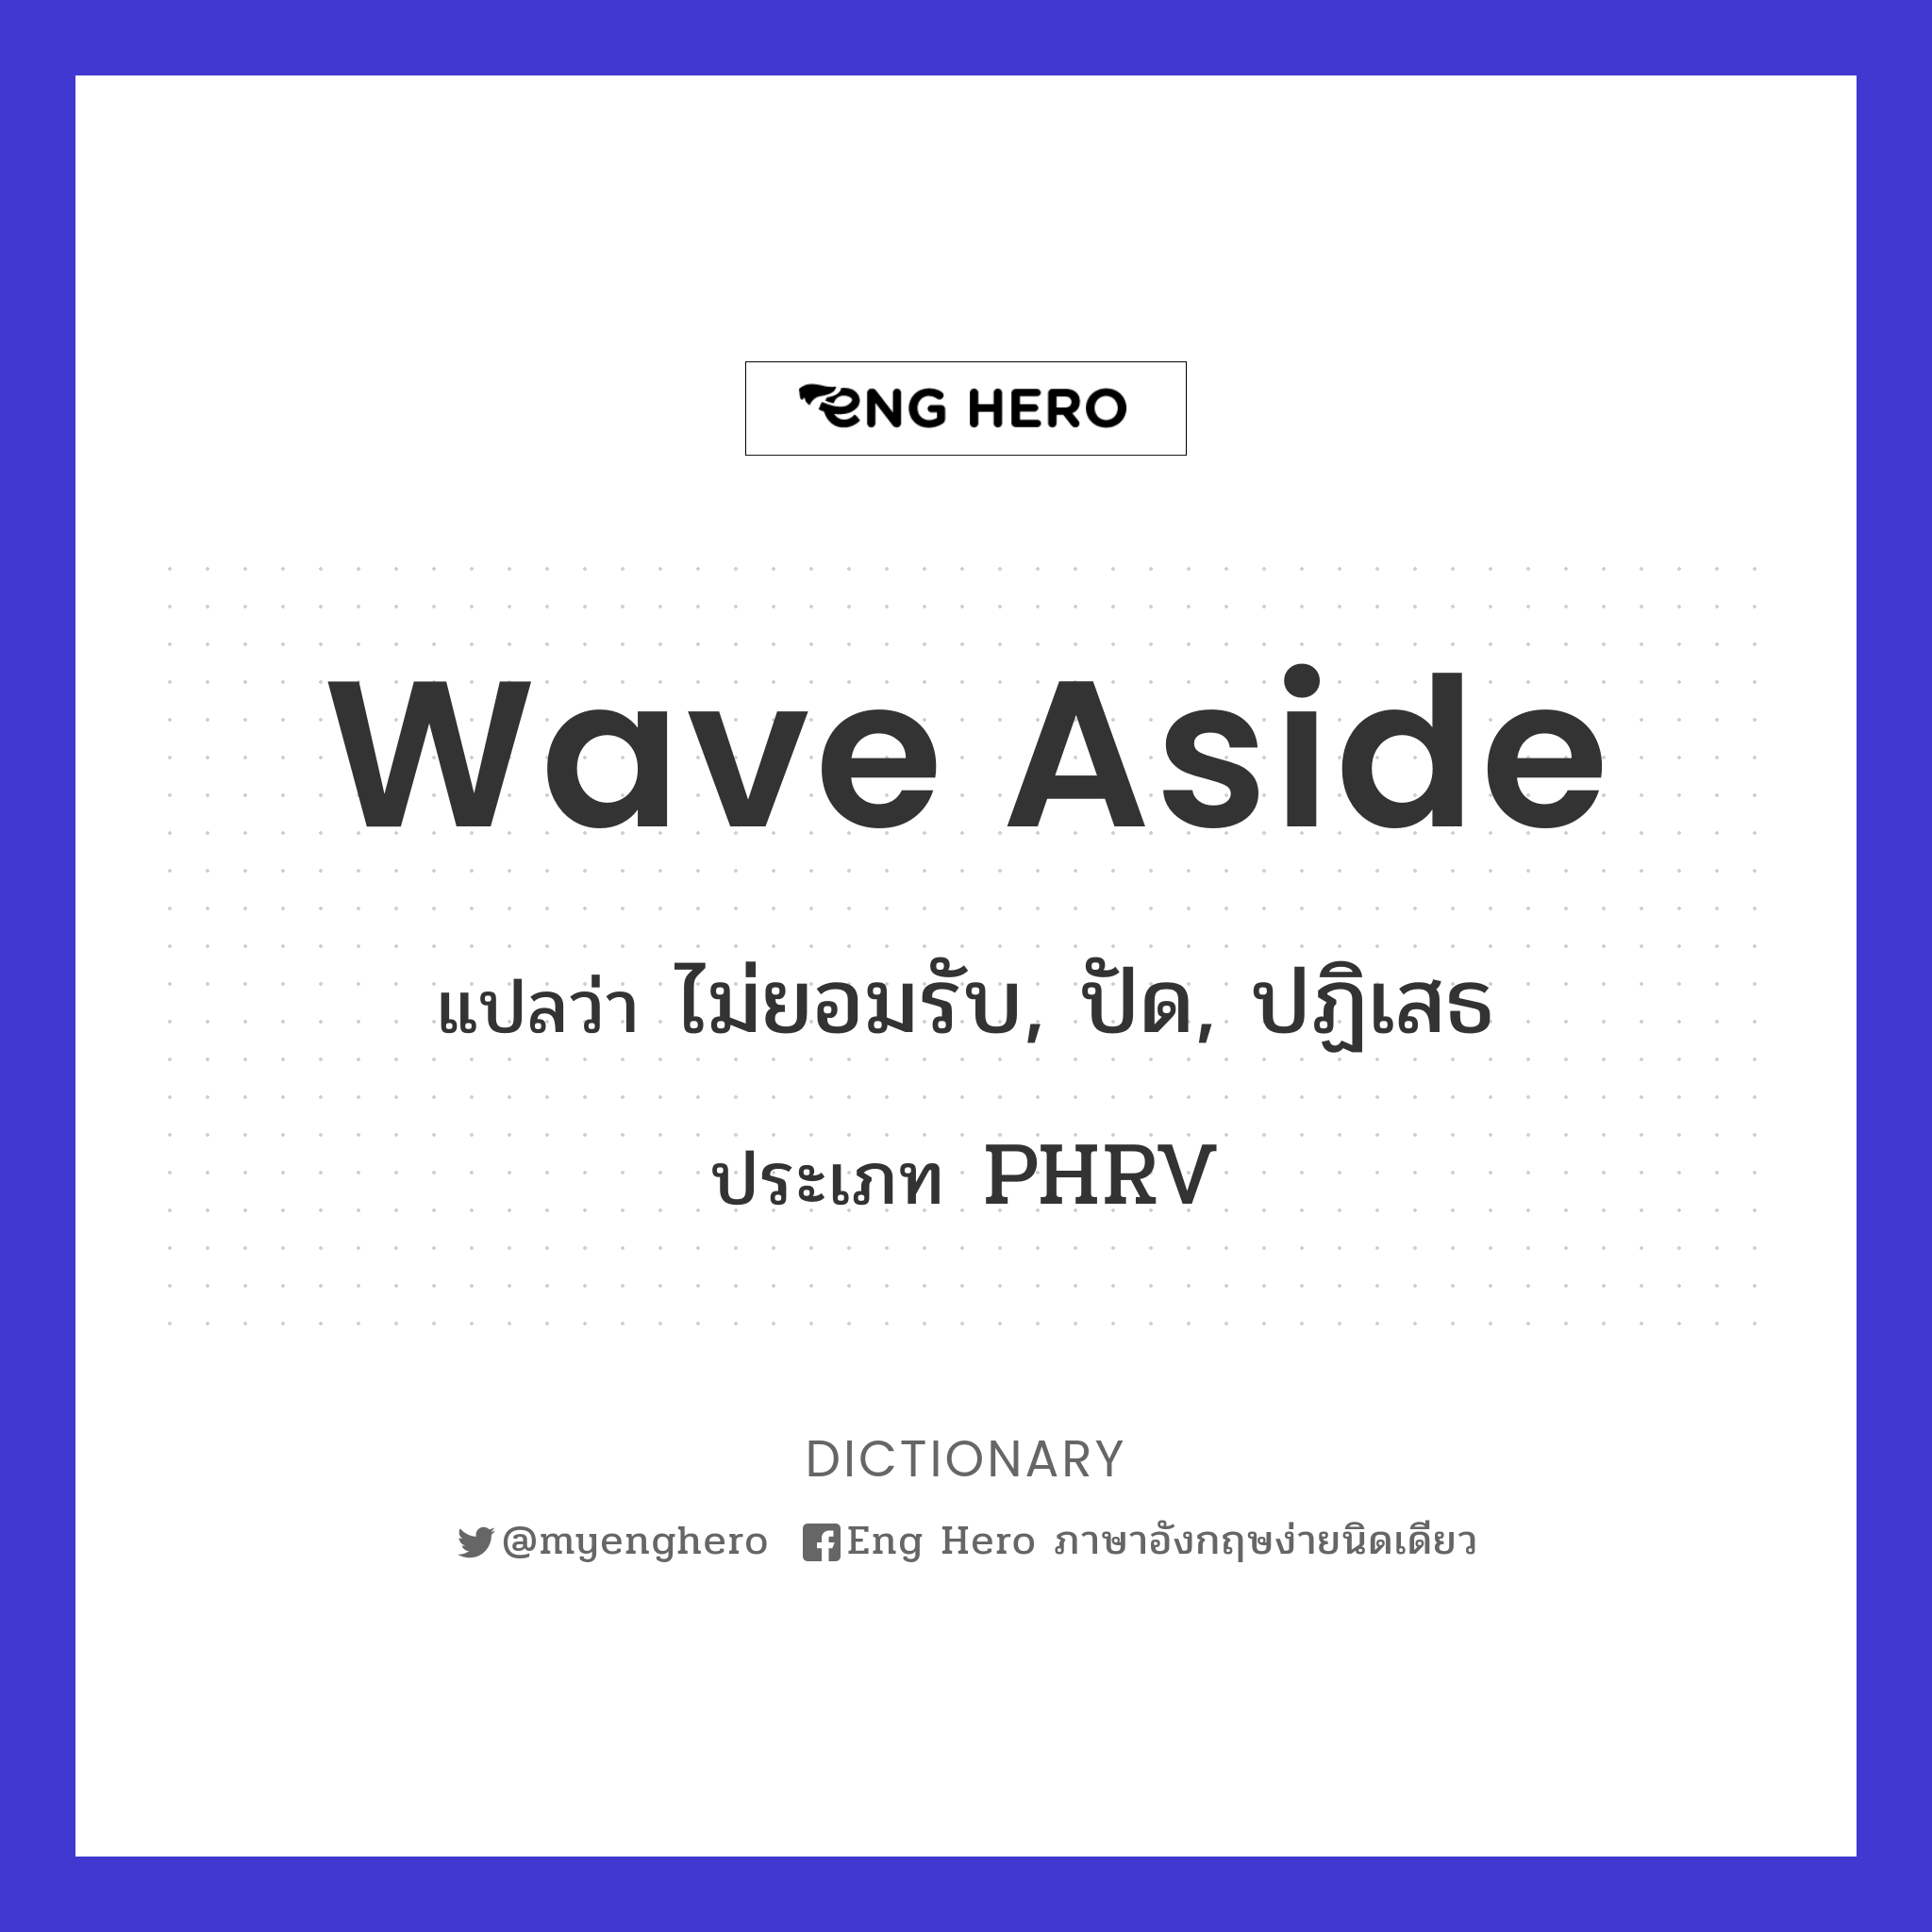 wave aside